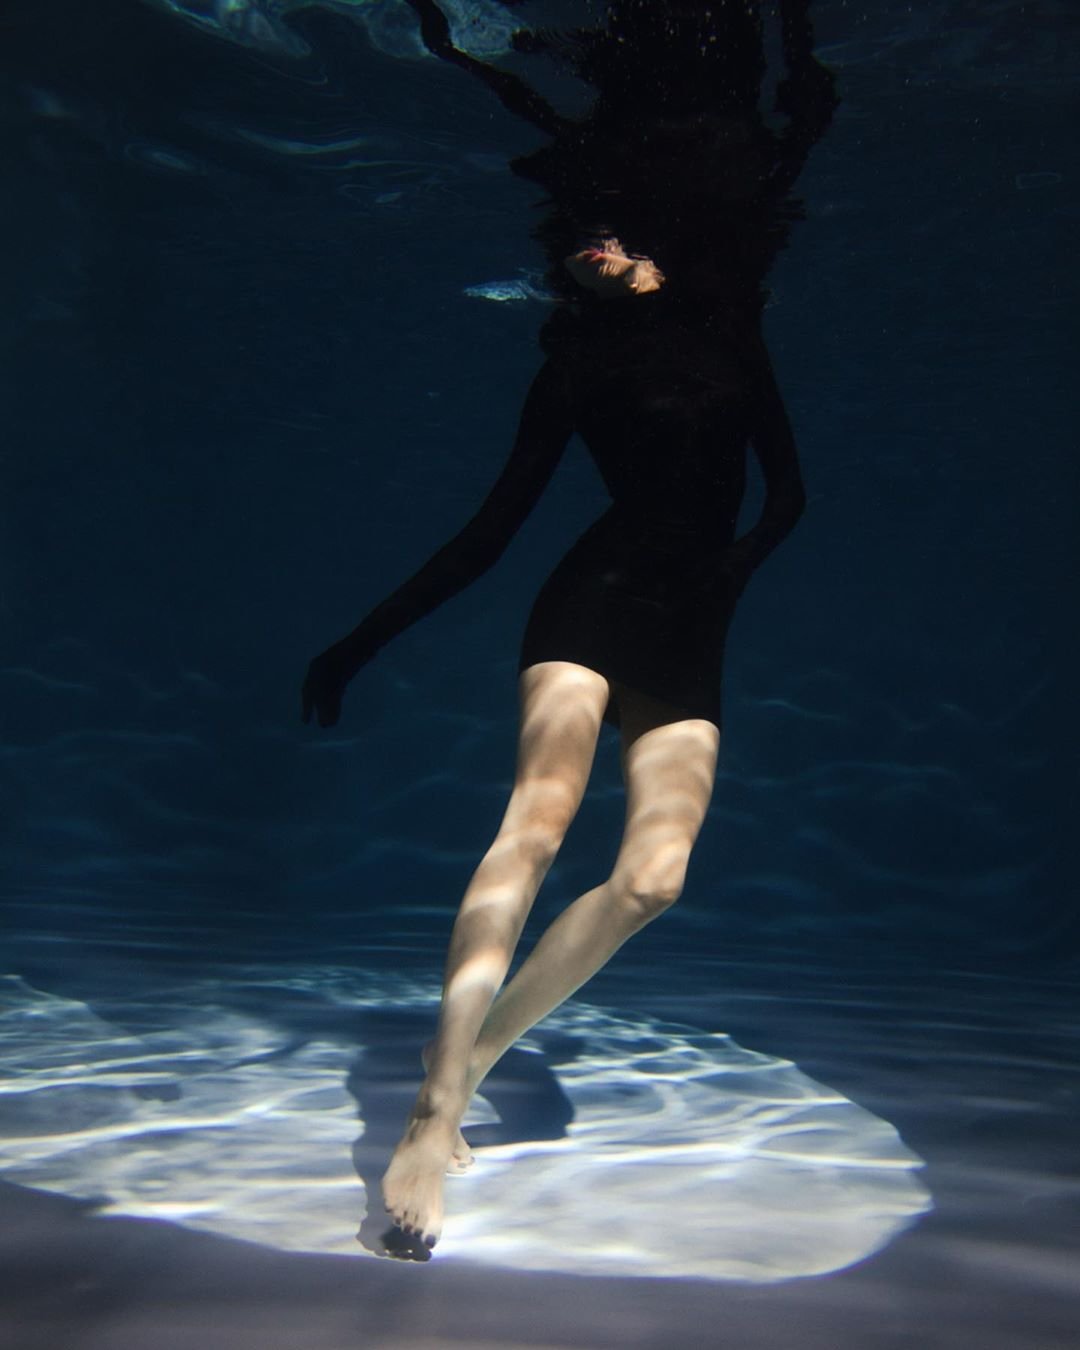 Анастасия Решетова представила фантастическую фотосессию под водой